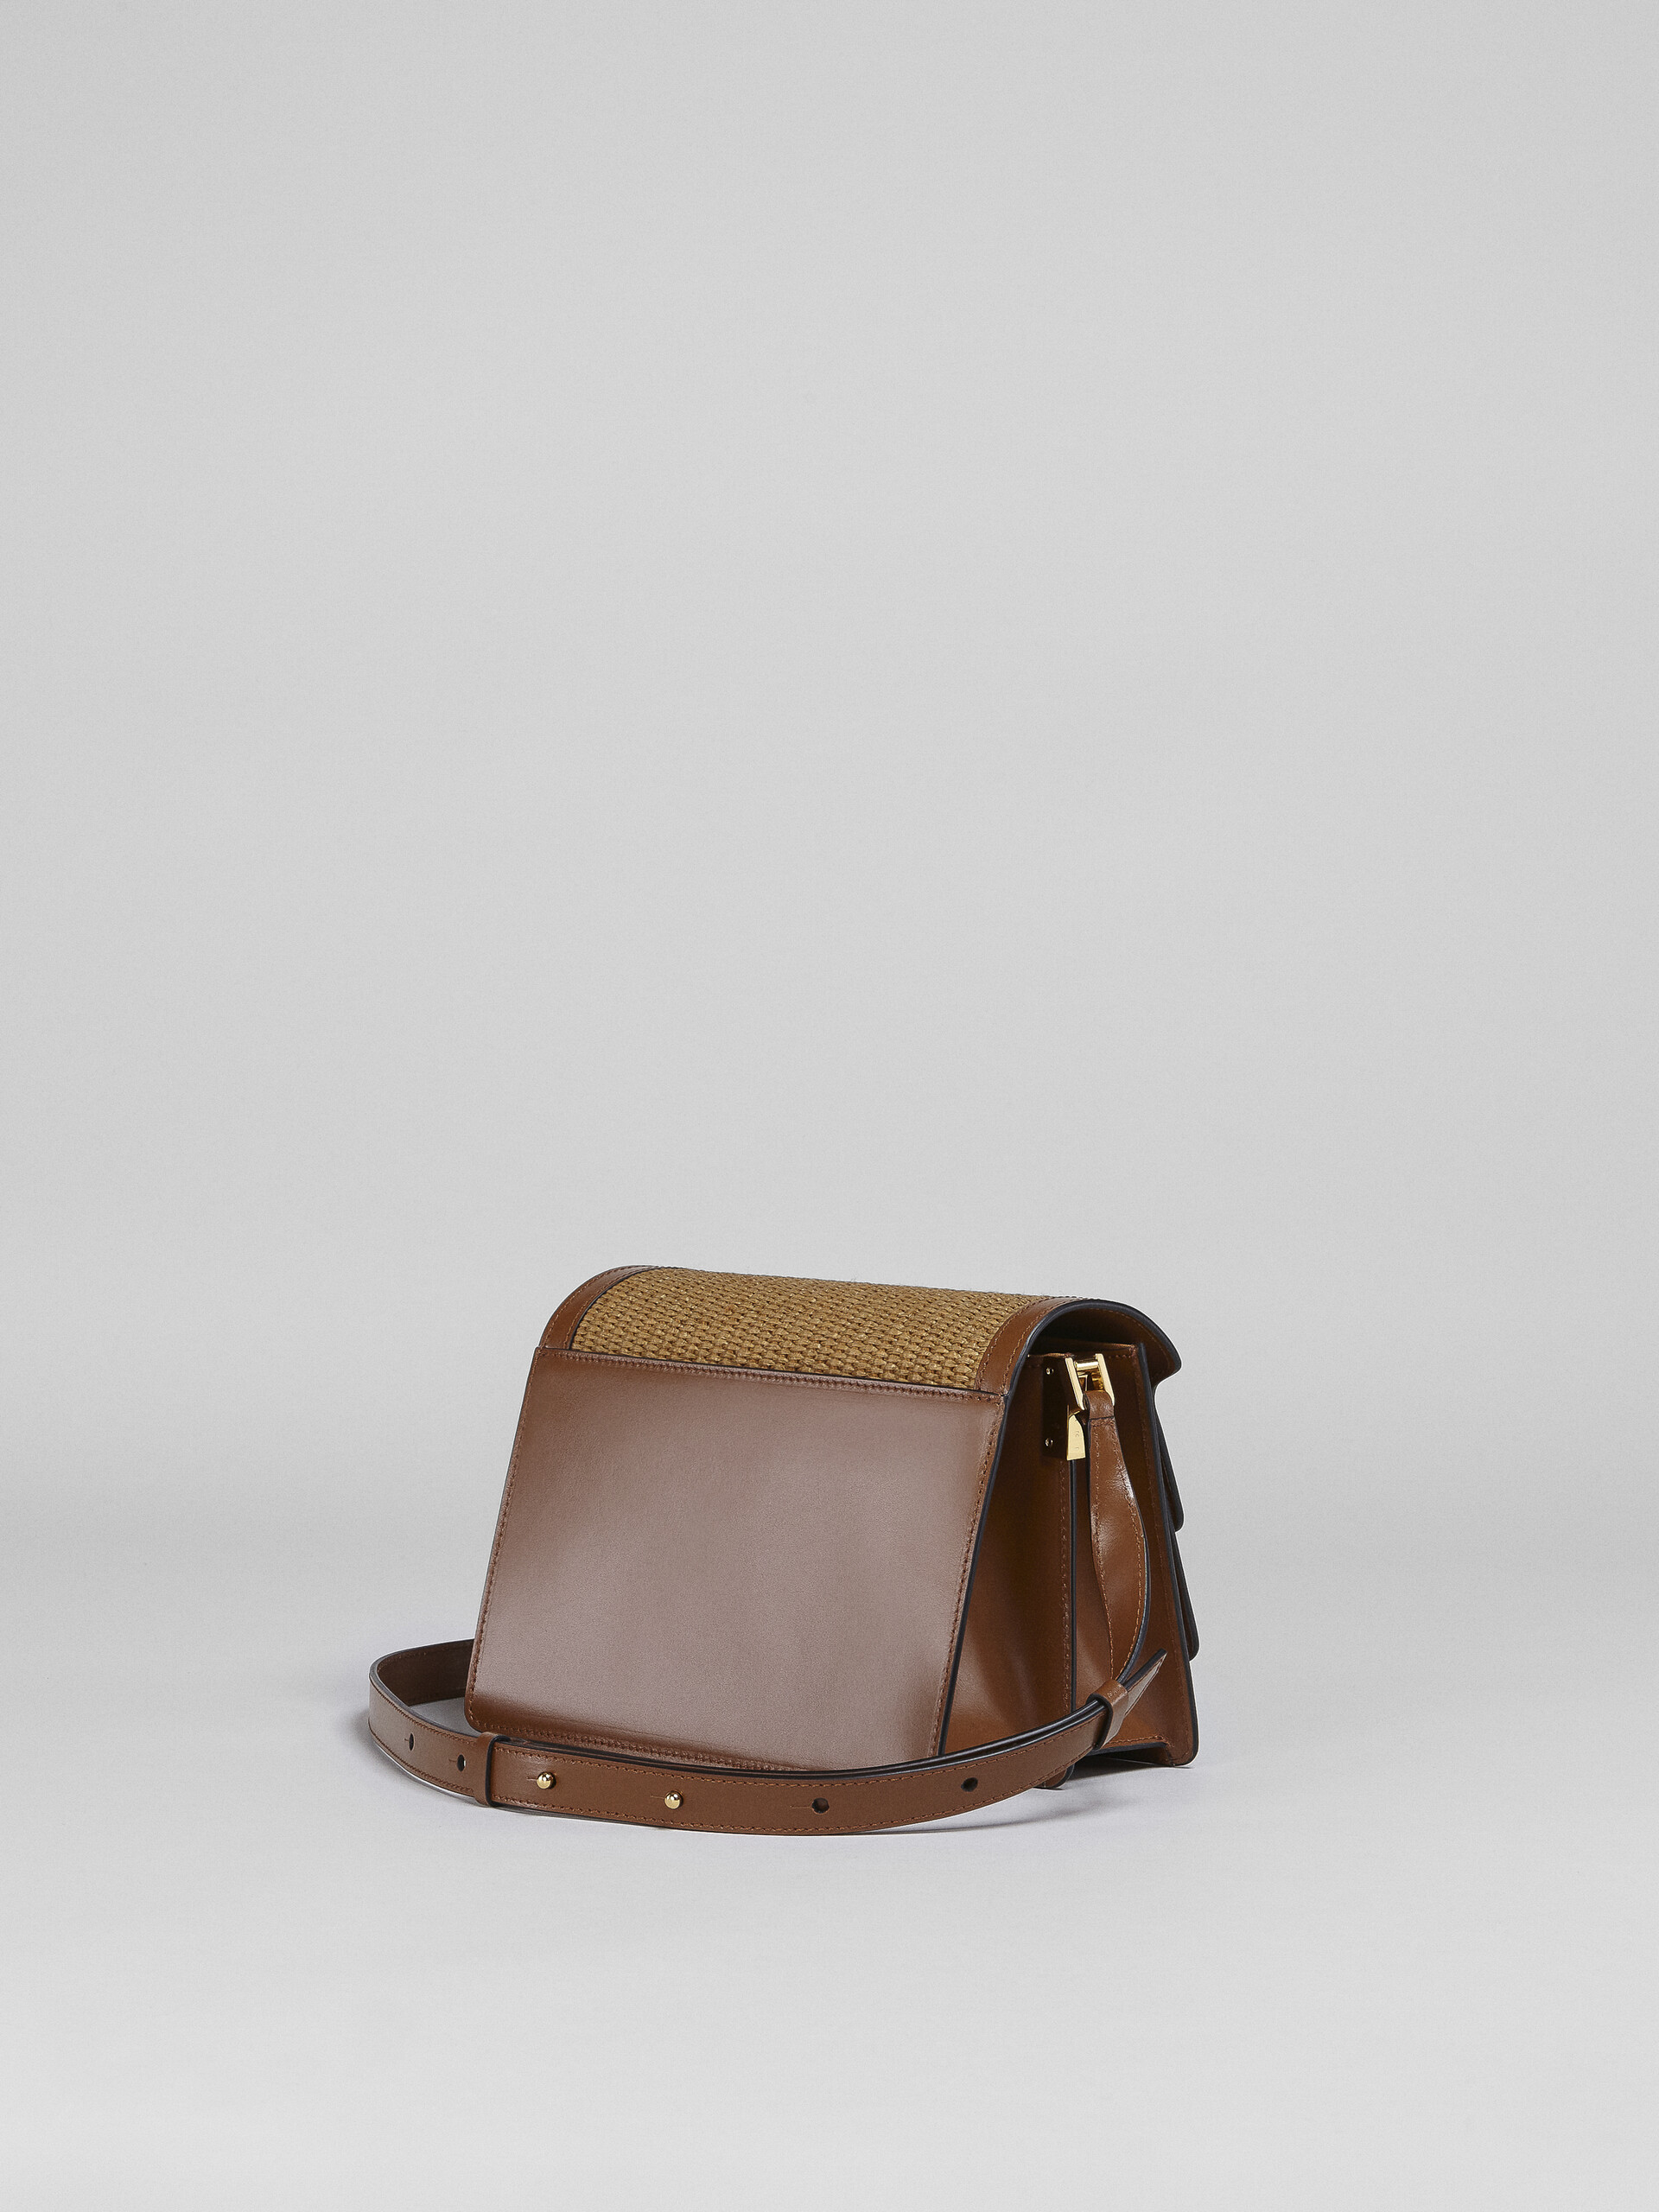 TRUNK SOFT bag media in pelle marrone e rafia - Borse a spalla - Image 3